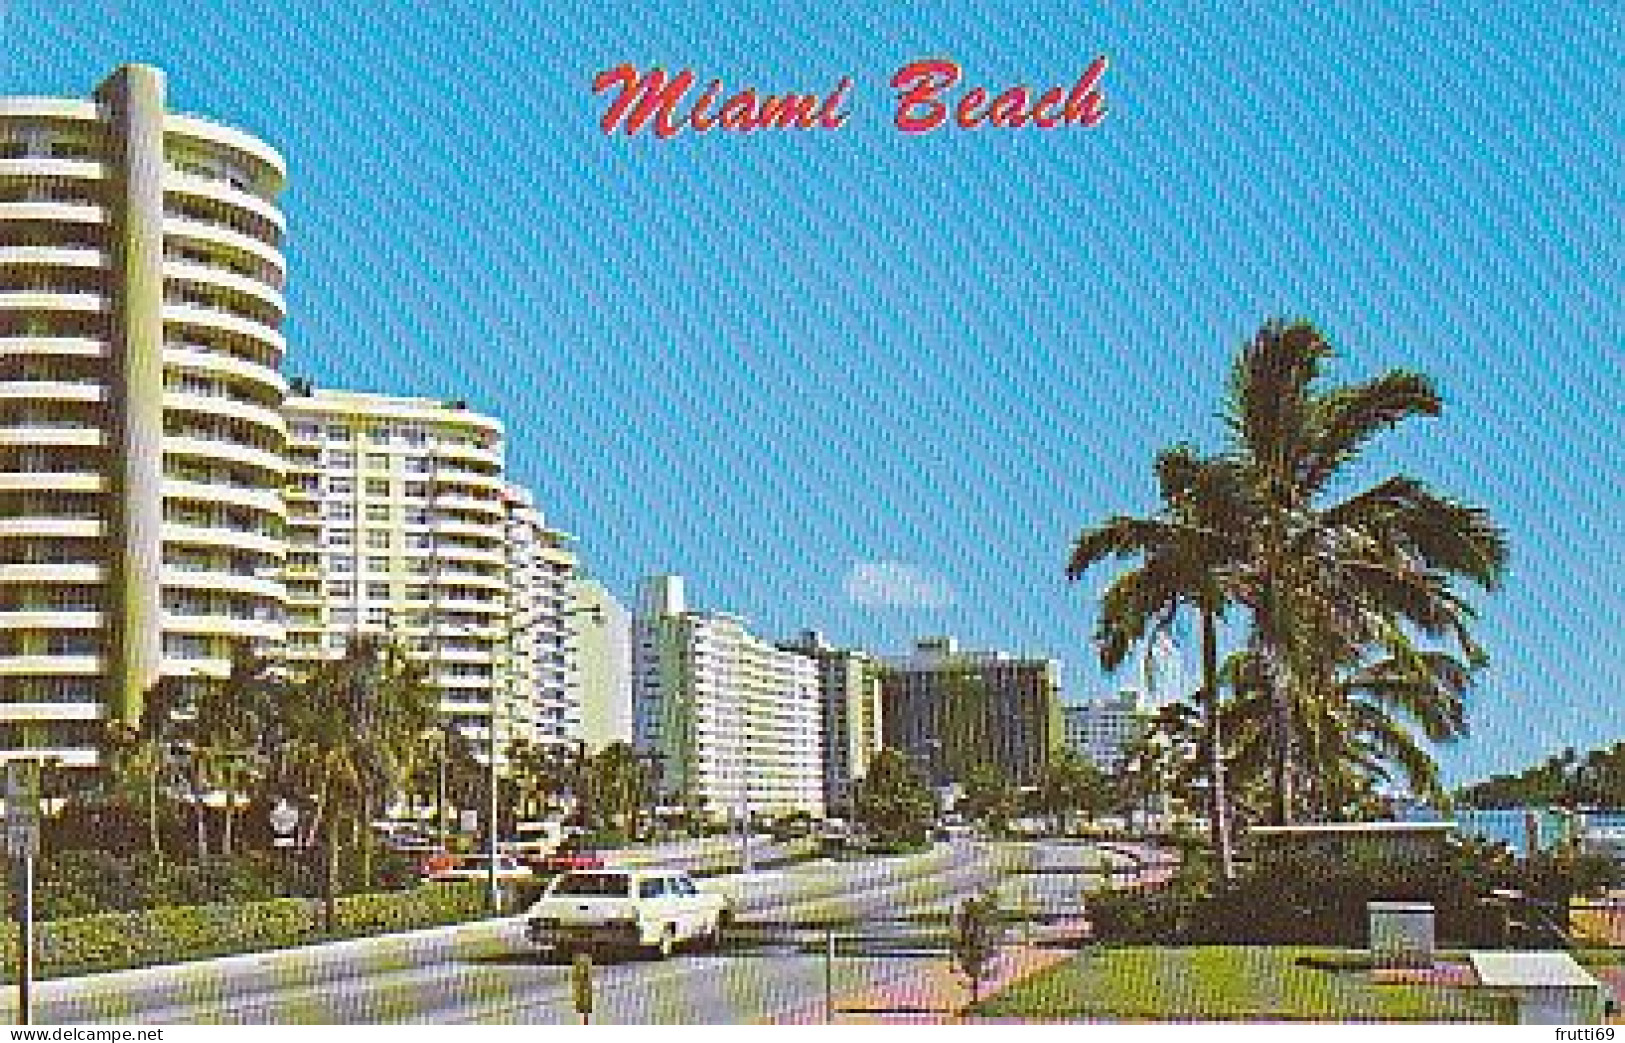 AK 209362 USA - Florida - Miami Beach - Miami Beach